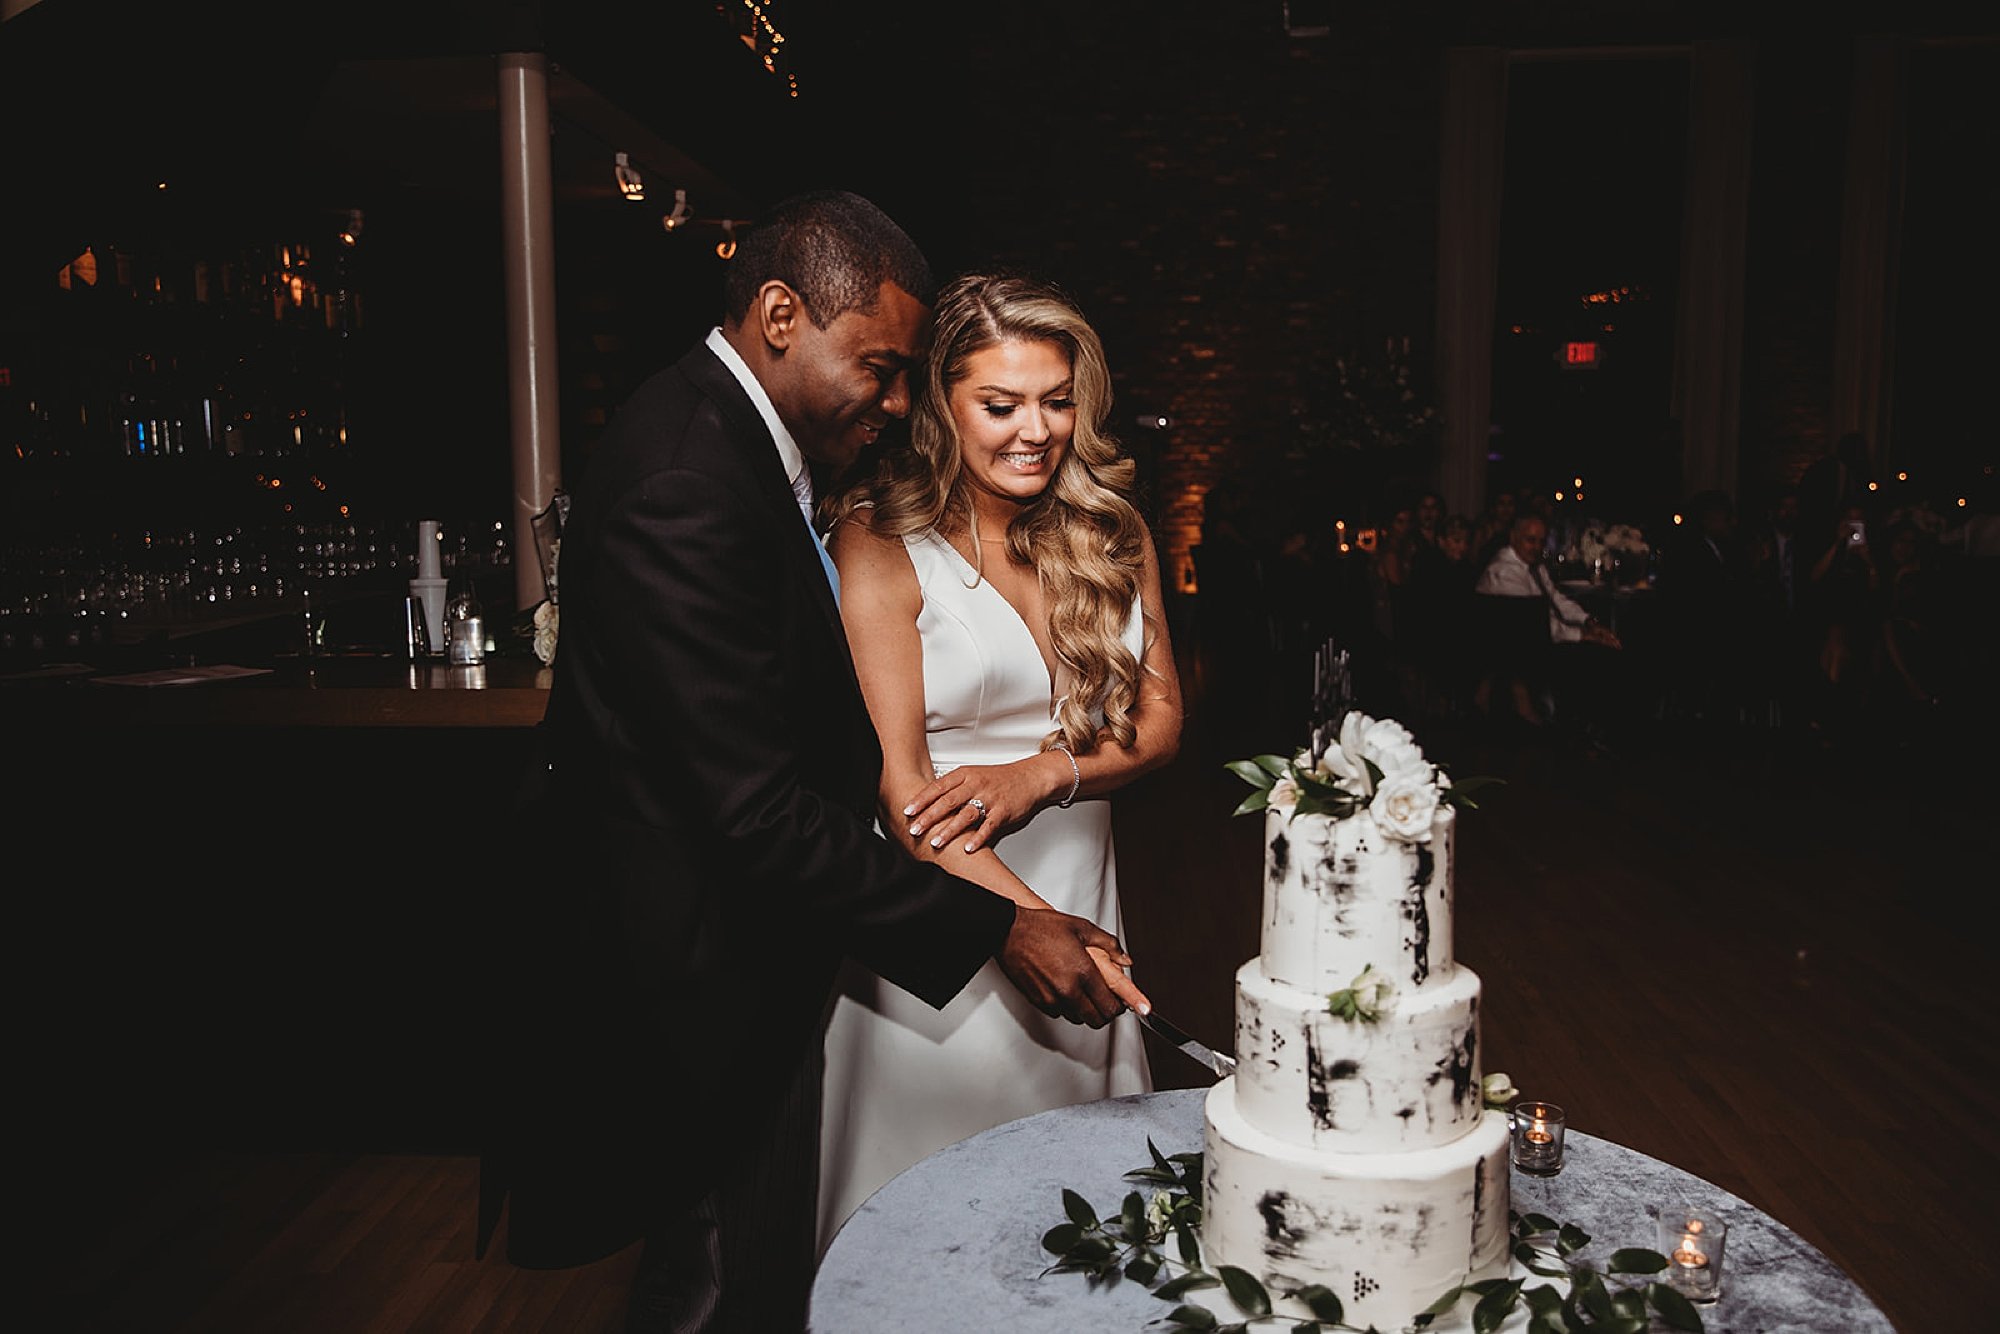 newlyweds kiss wedding cake together at Beacon NY wedding reception